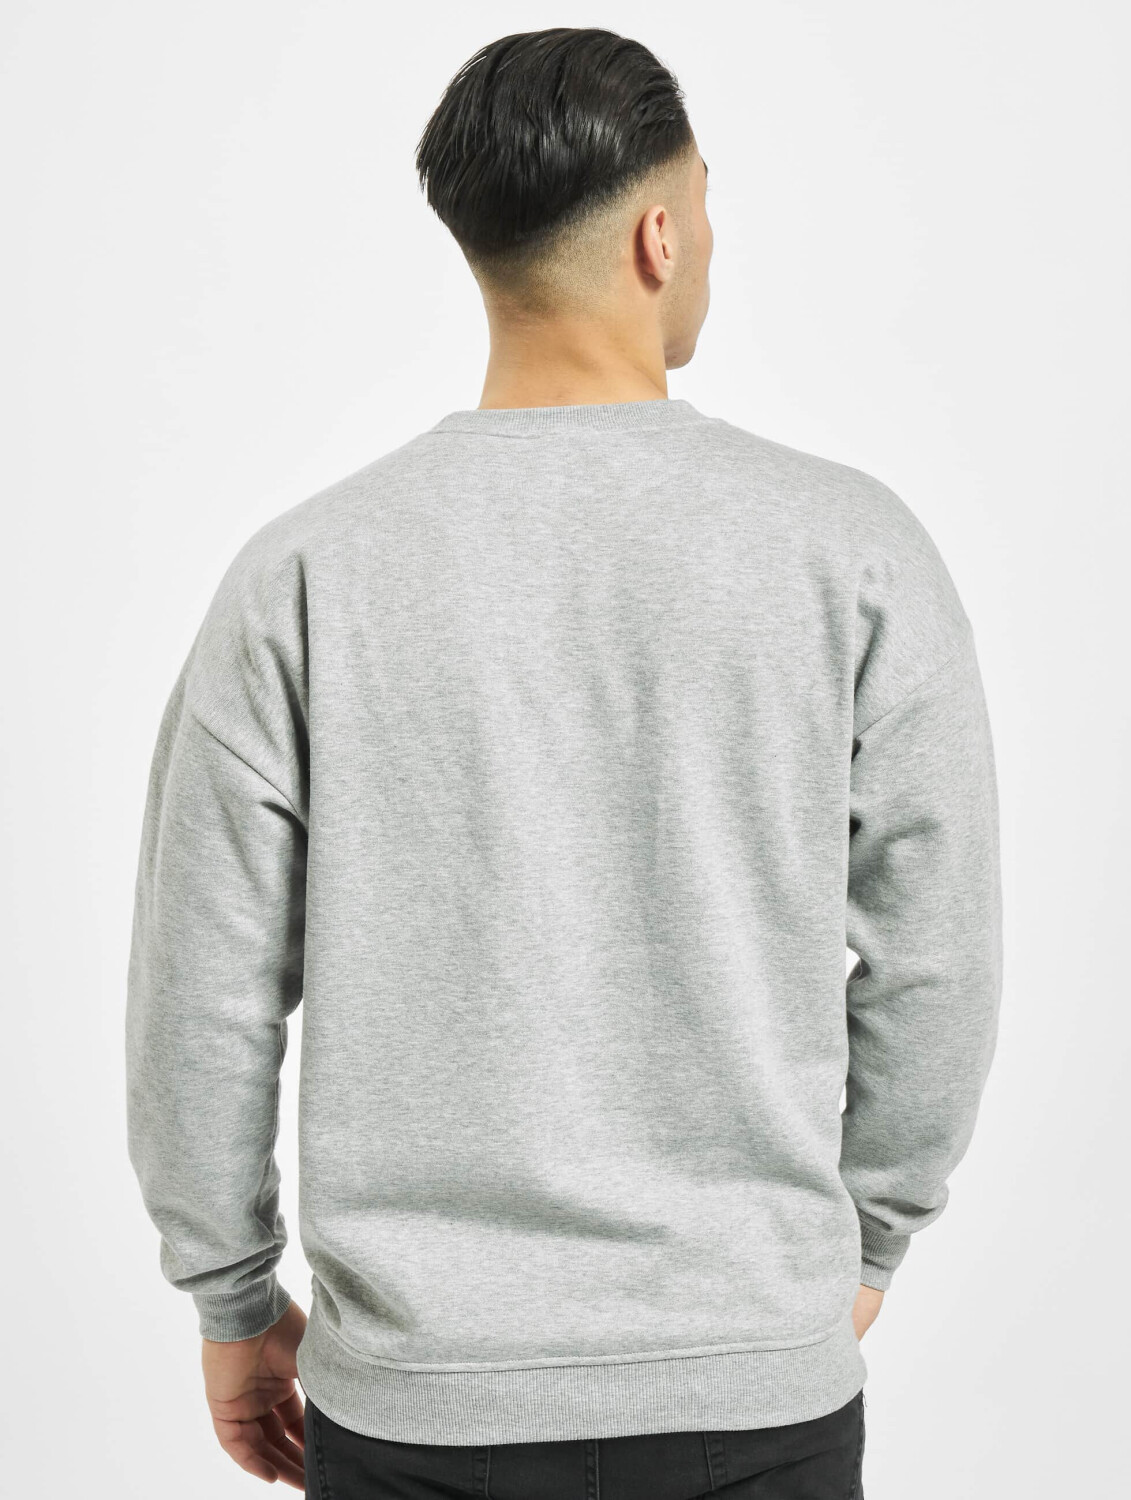 Urban Classics Sweatshirt Camden grey (TB1591GRY) ab 22,99 € |  Preisvergleich bei